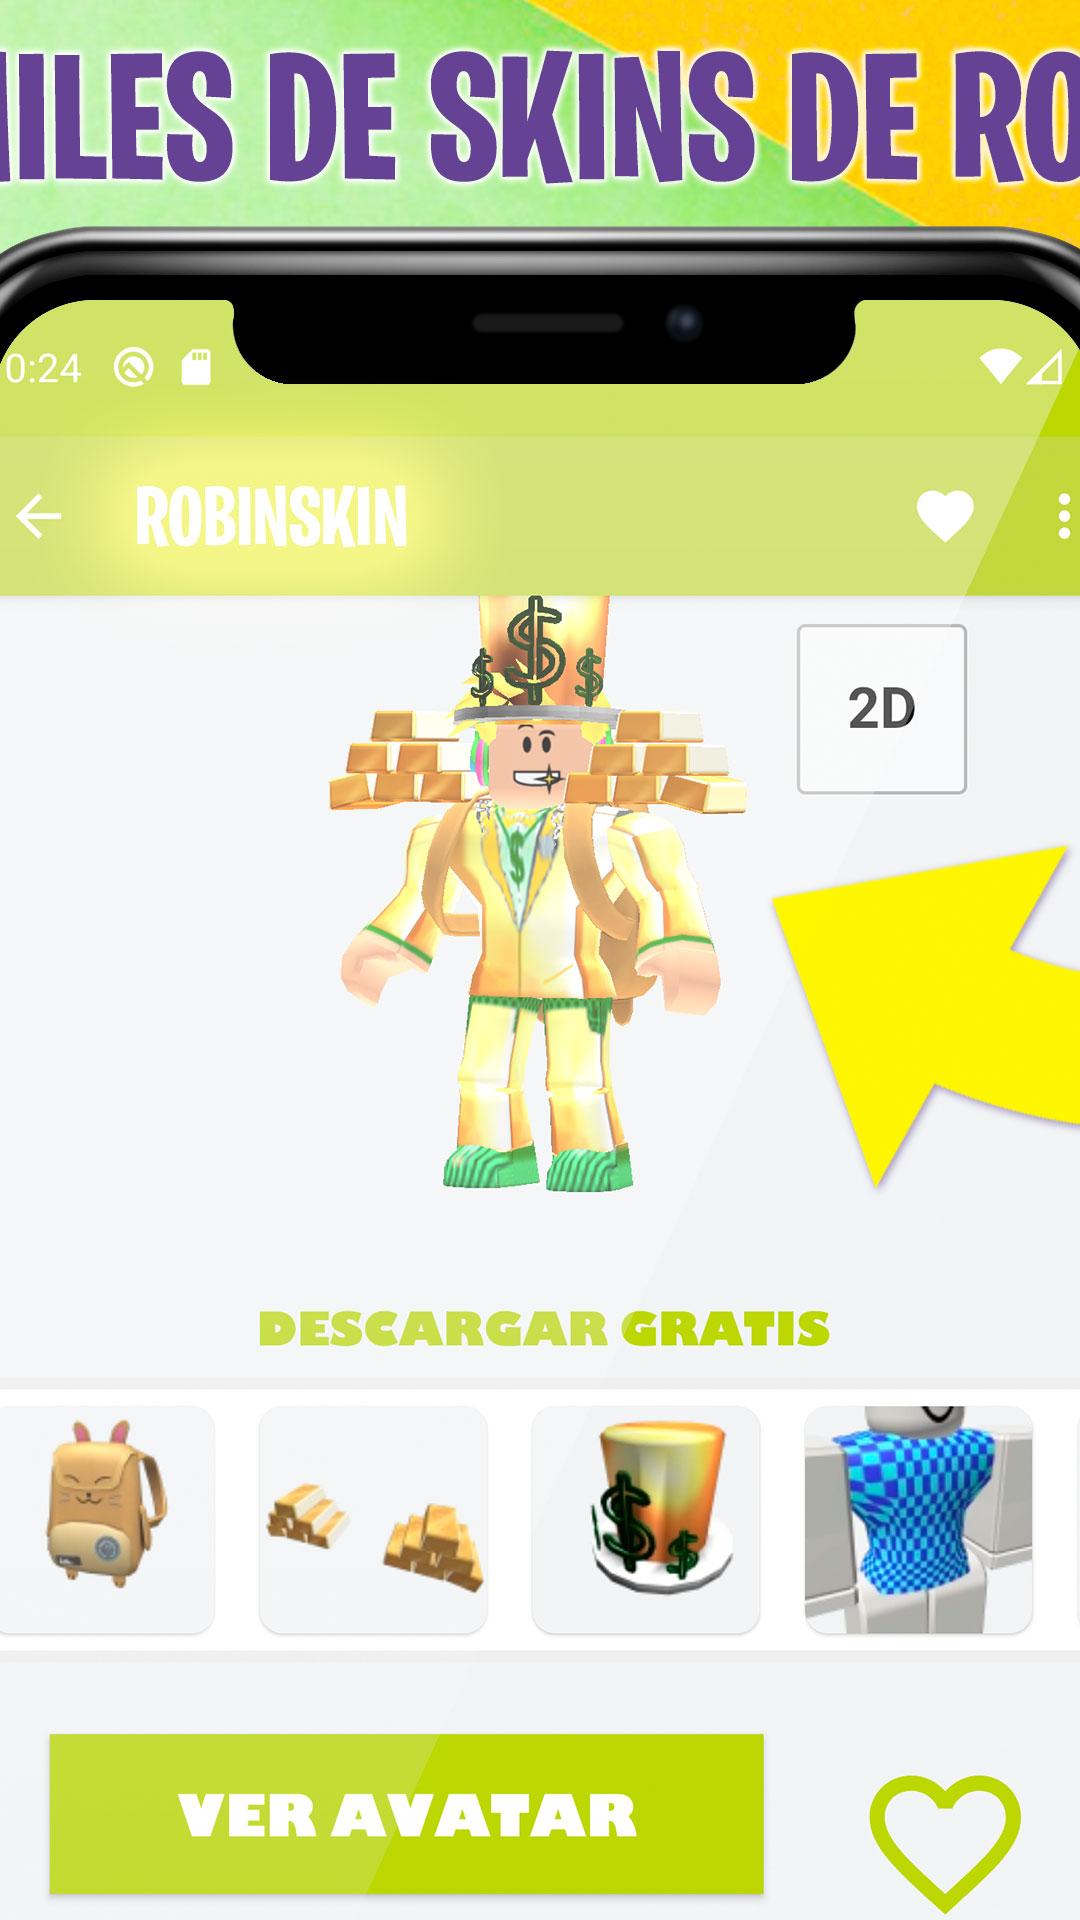 Mis Skins De Roblox Sin Robux Gratis Robinskin For Android Apk Download - como tener robux gratis en roblox sin pagar